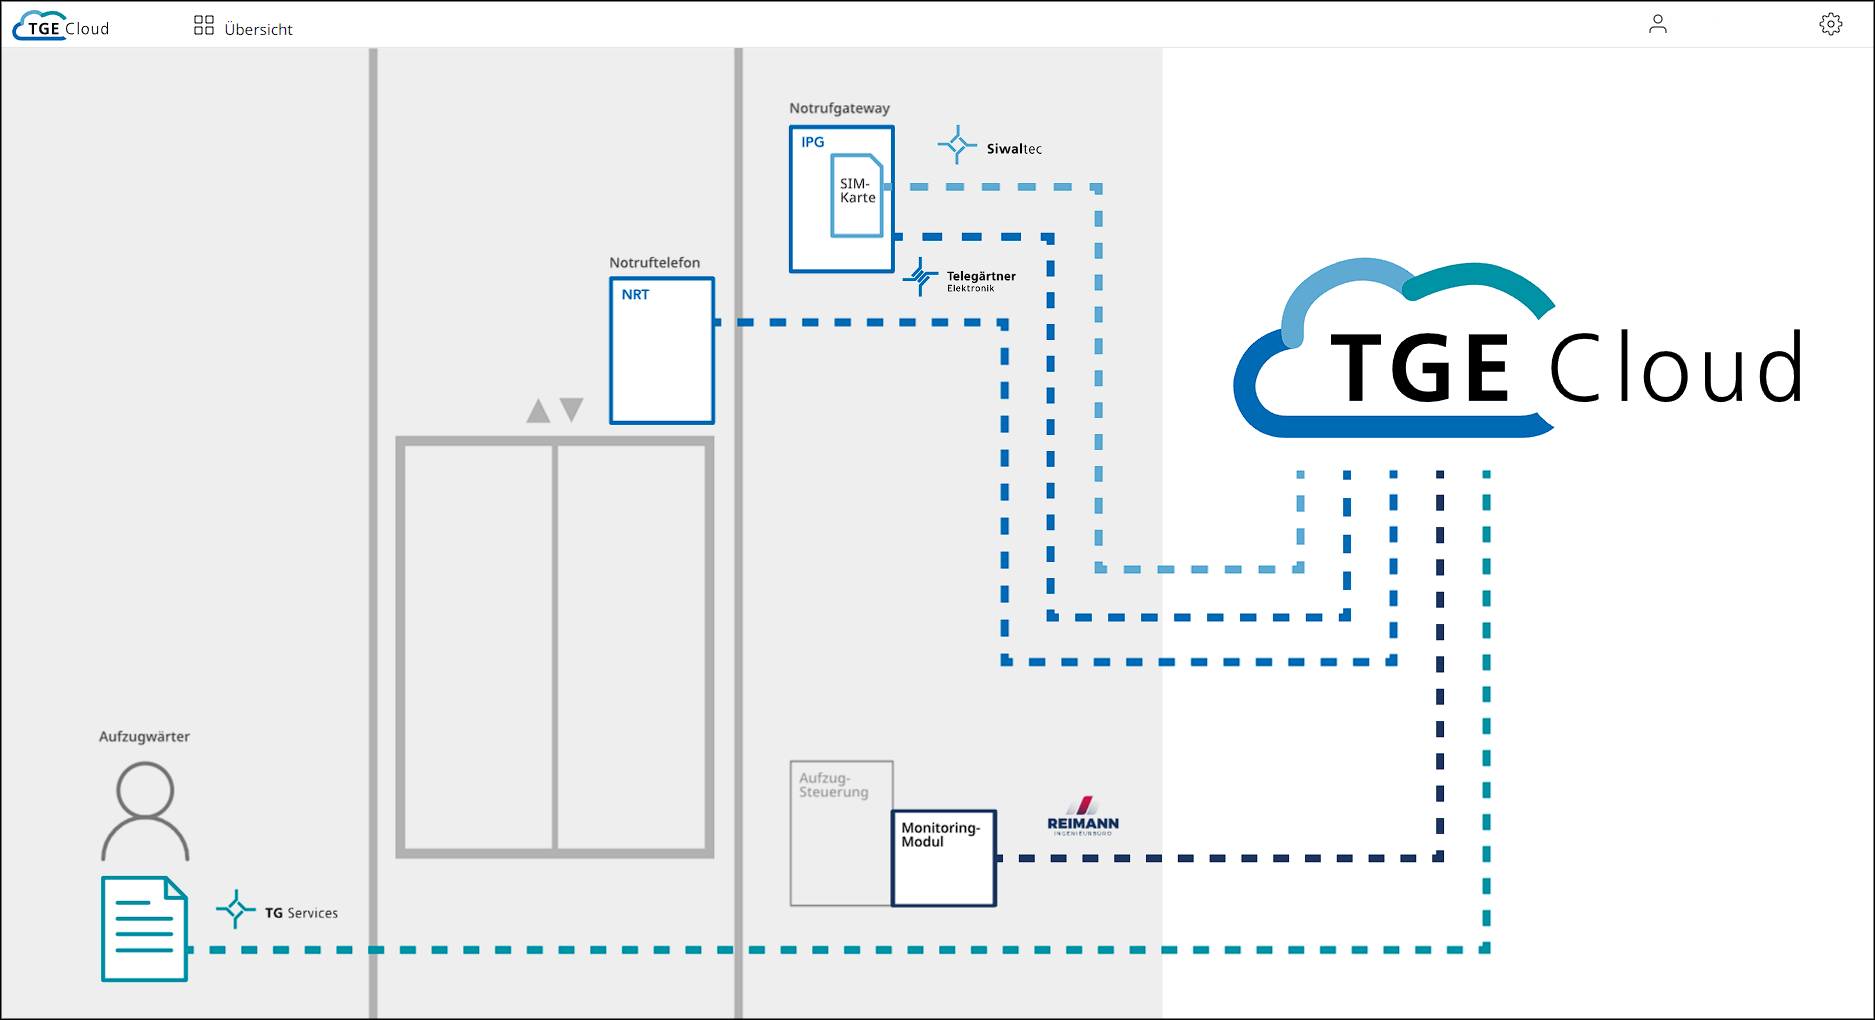 Übersicht über Funktionen der TGE-Cloud